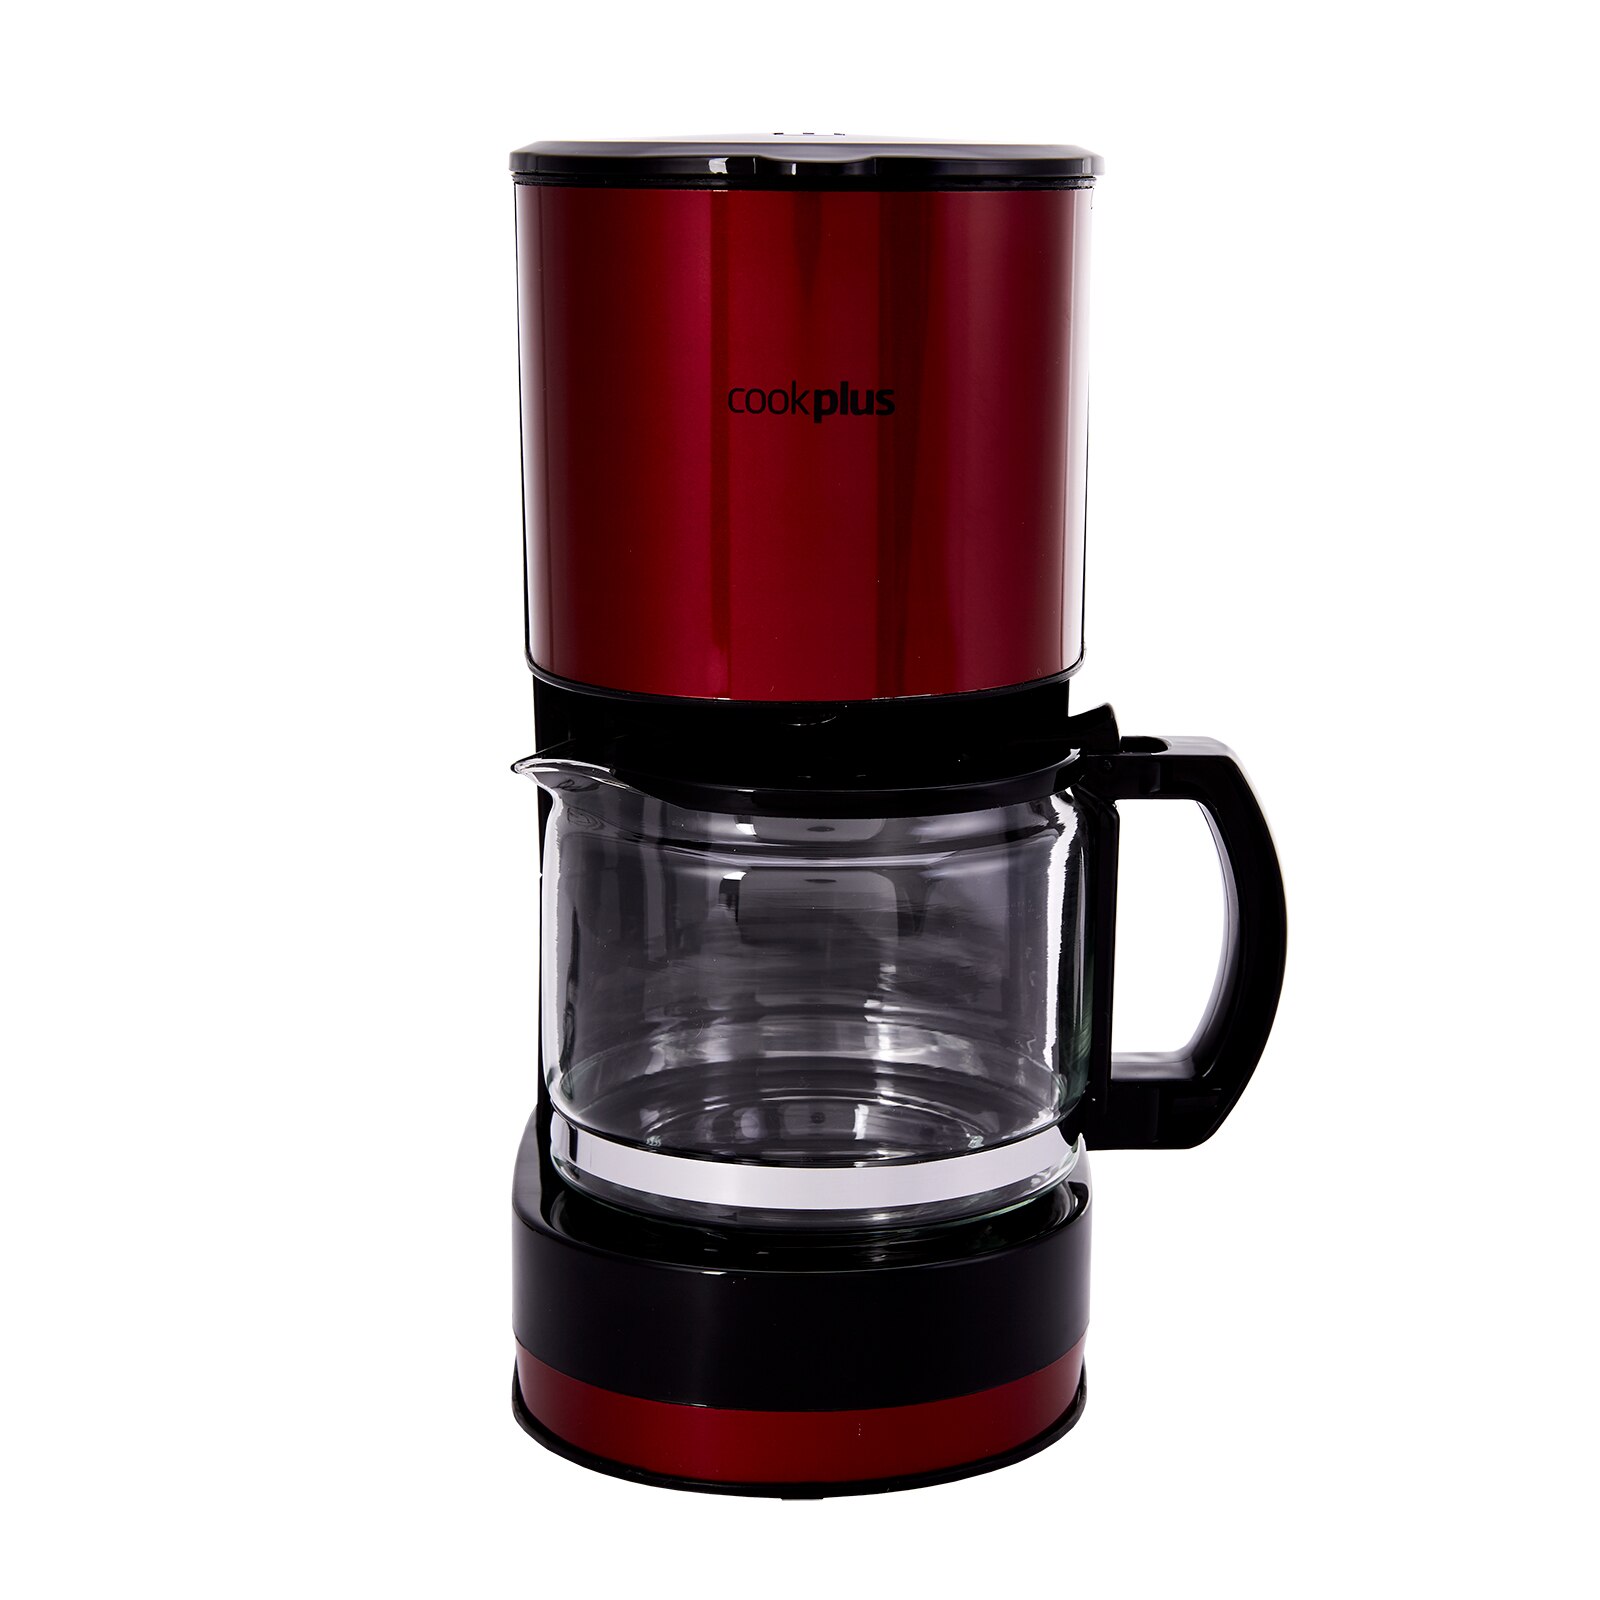 Karaca 601 Cookplus Coffee Keyf Filtre Kahve Makinesi